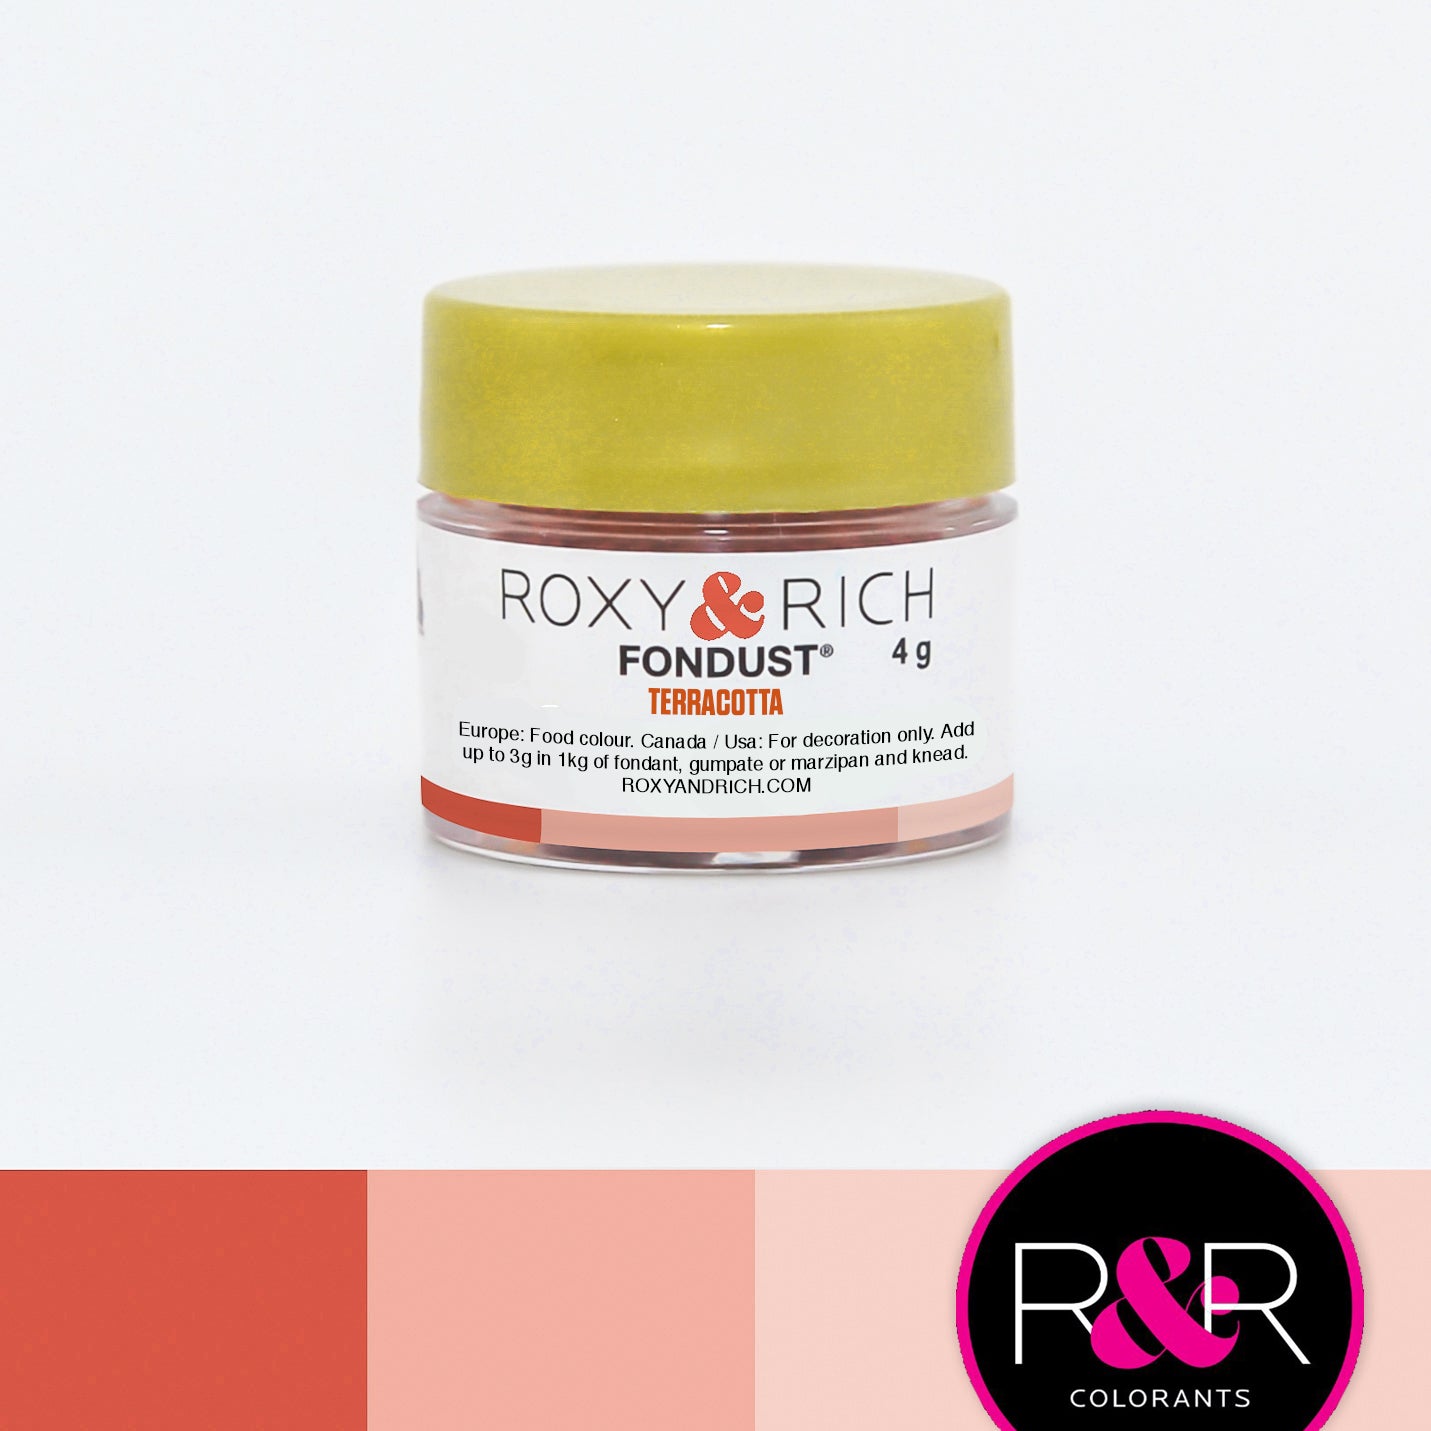 Colorant FONDUST Terracotta 4g   - Roxy & Rich - Colorant alimentaire hydrosoluble - F4-049